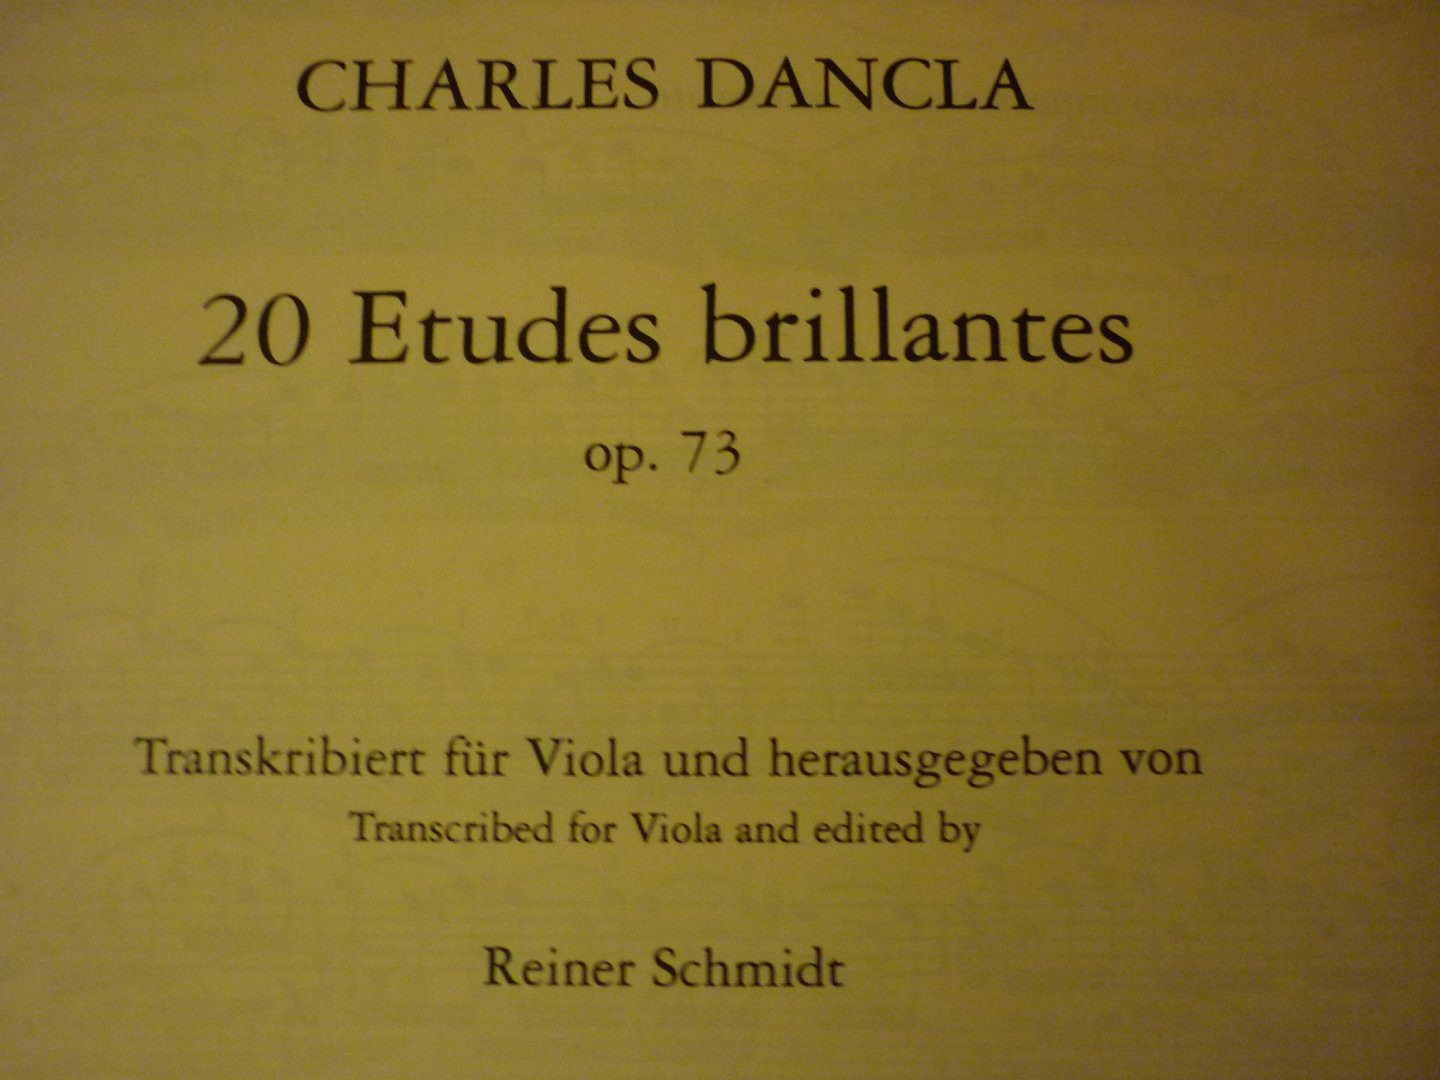 Dancla; Charles (1817–1907) - 20 Etudes brillantes; op. 73 (Reiner Schmidt)